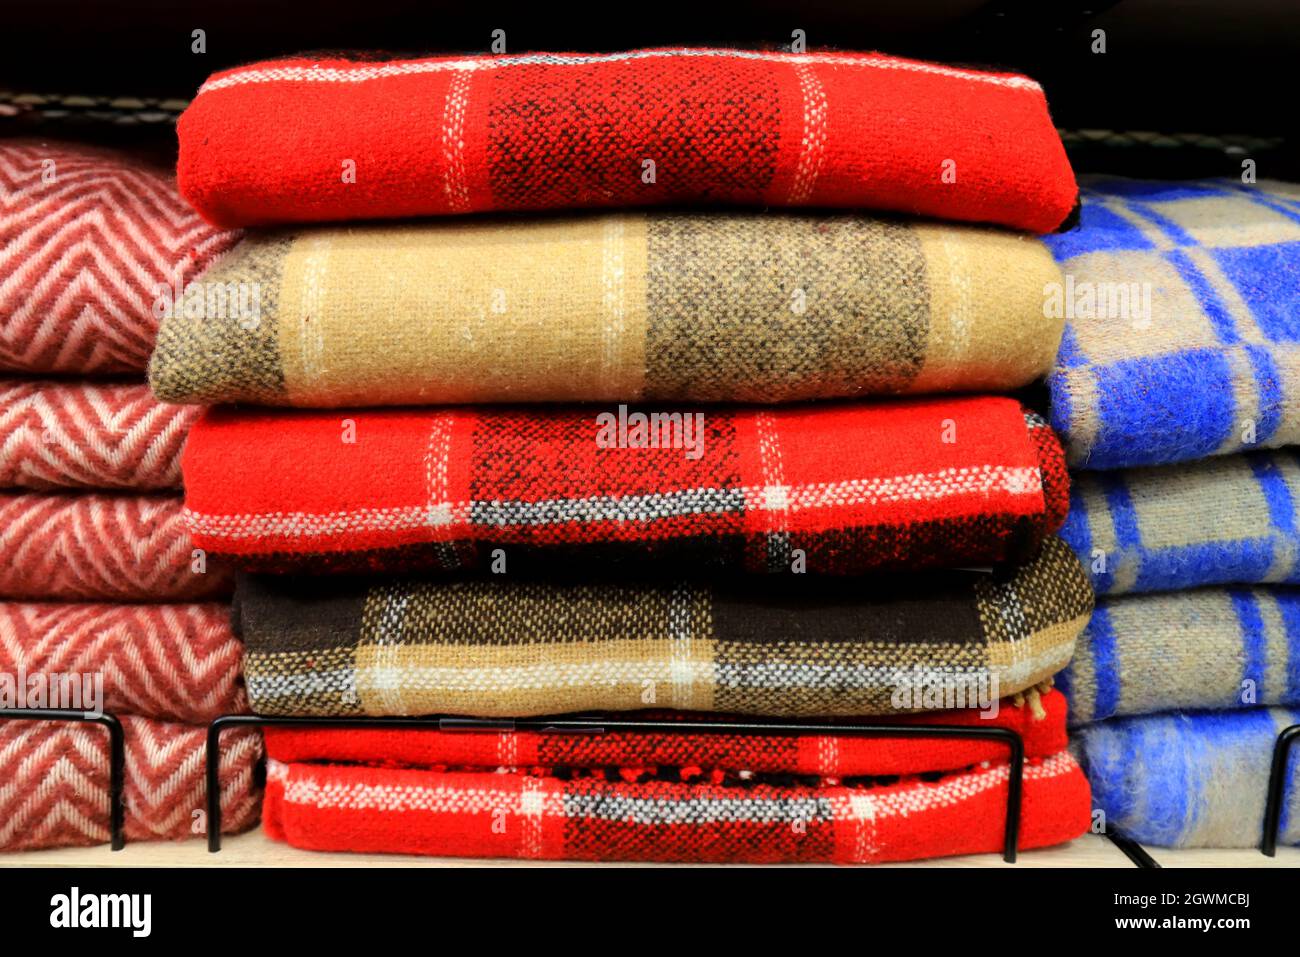 Coperte di lana immagini e fotografie stock ad alta risoluzione - Alamy